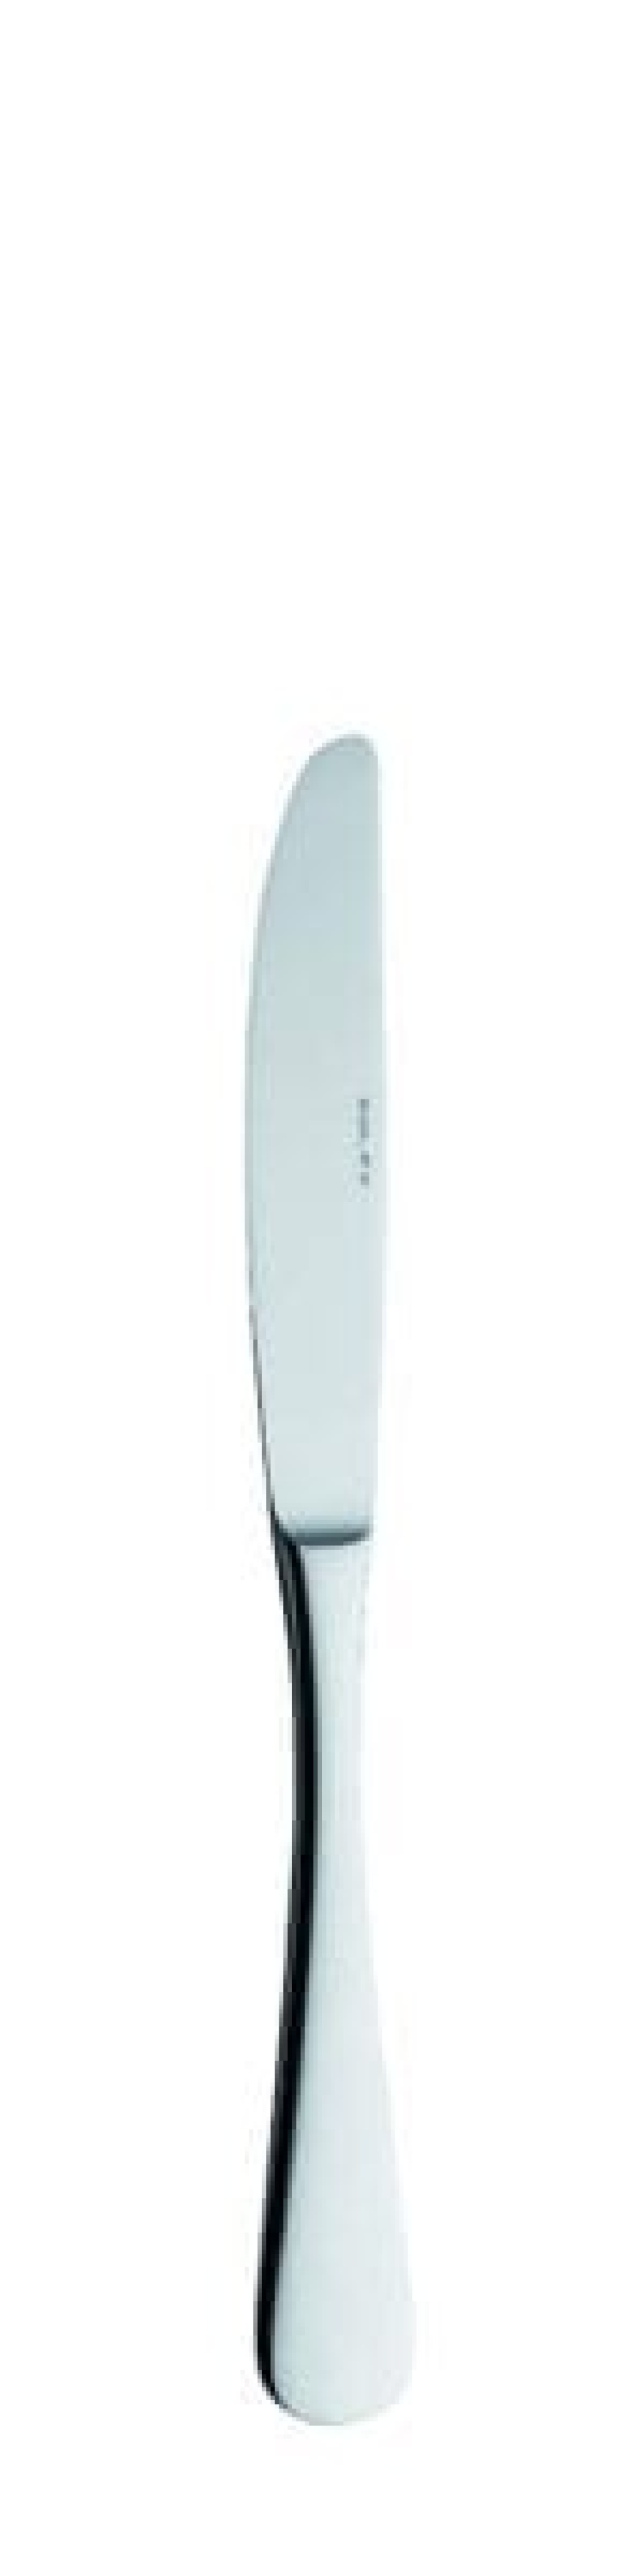 Nóż deserowy Julia, 211 mm w grupie Nakrycie stołu / Sztućce / Noże w The Kitchen Lab (1284-15230)